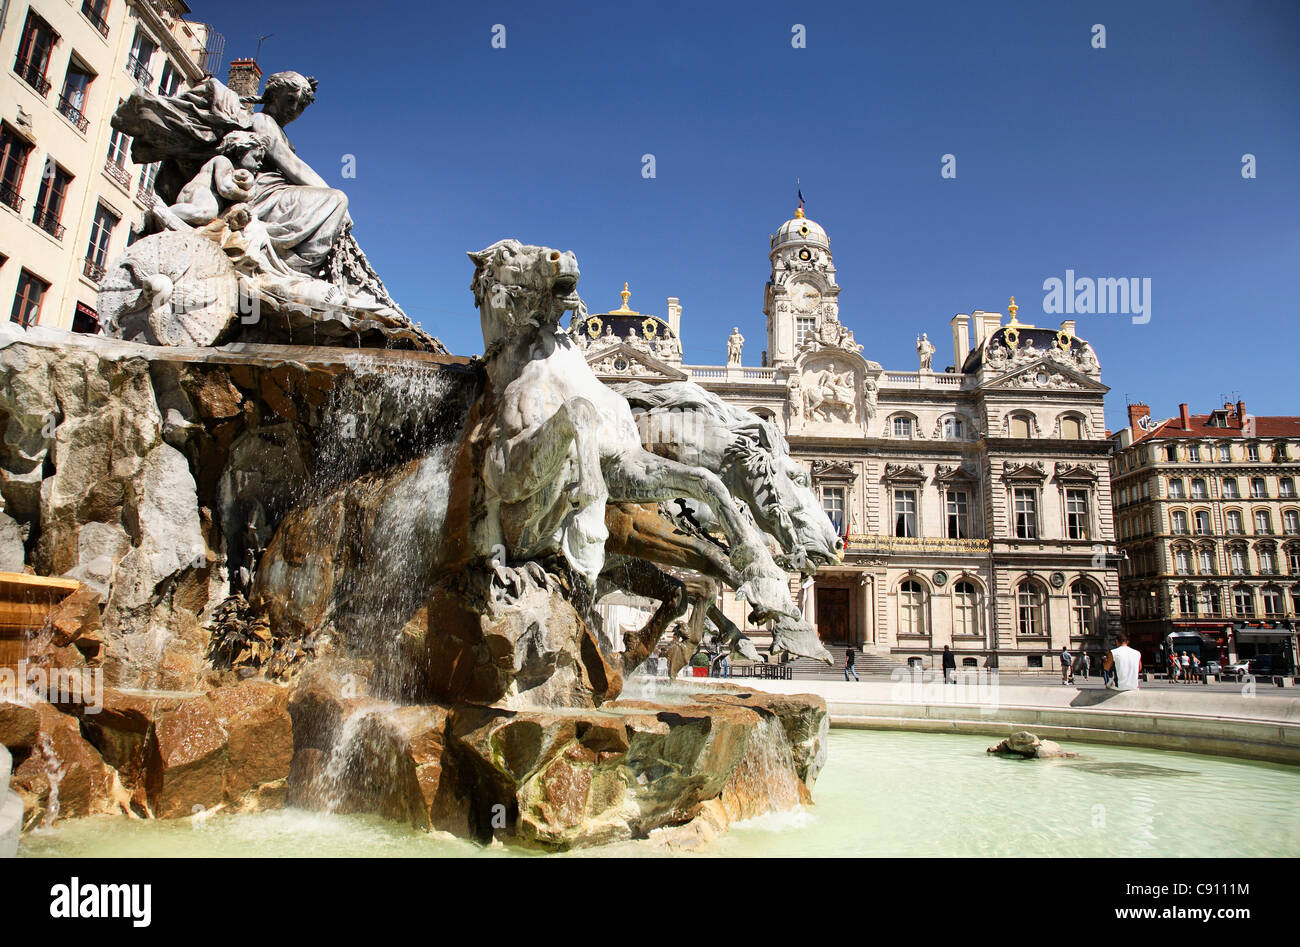 Place des Terreaux à Lyon : Sa fontaine géante et son musée hanté - Vanupied